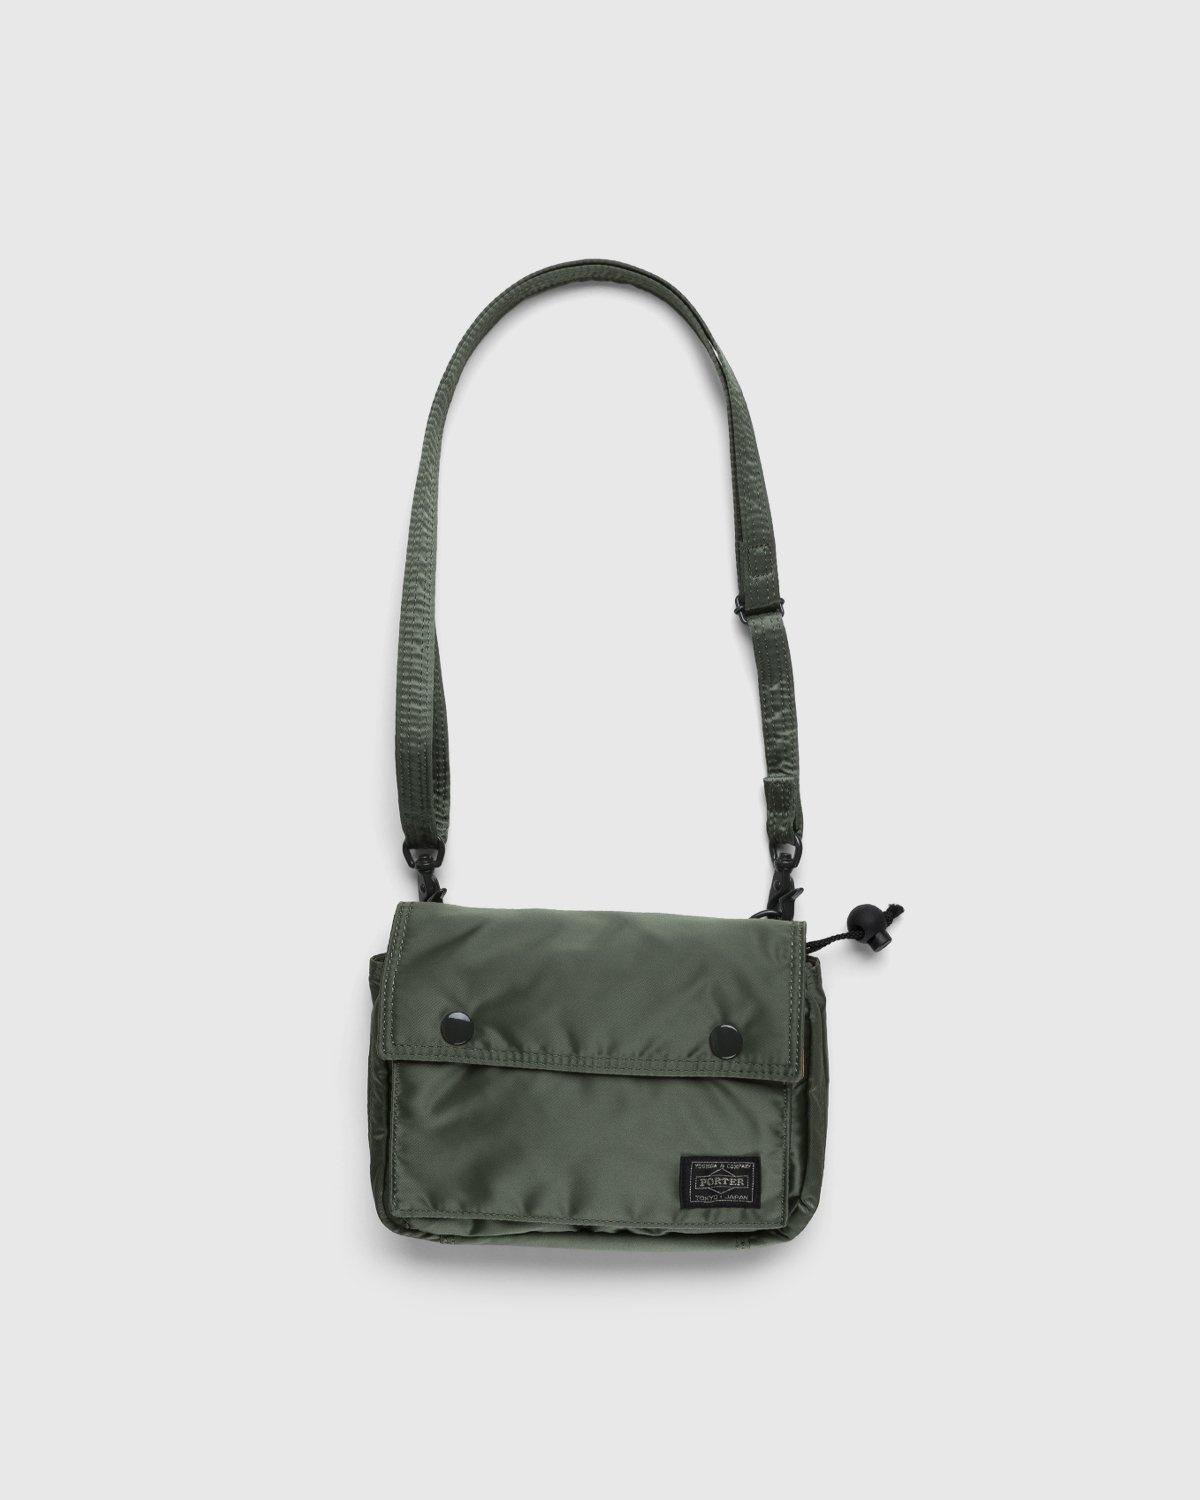 Porter-Yoshida & Co. – Tanker Clip Shoulder Bag Sage Green - Bags - Green - Image 1